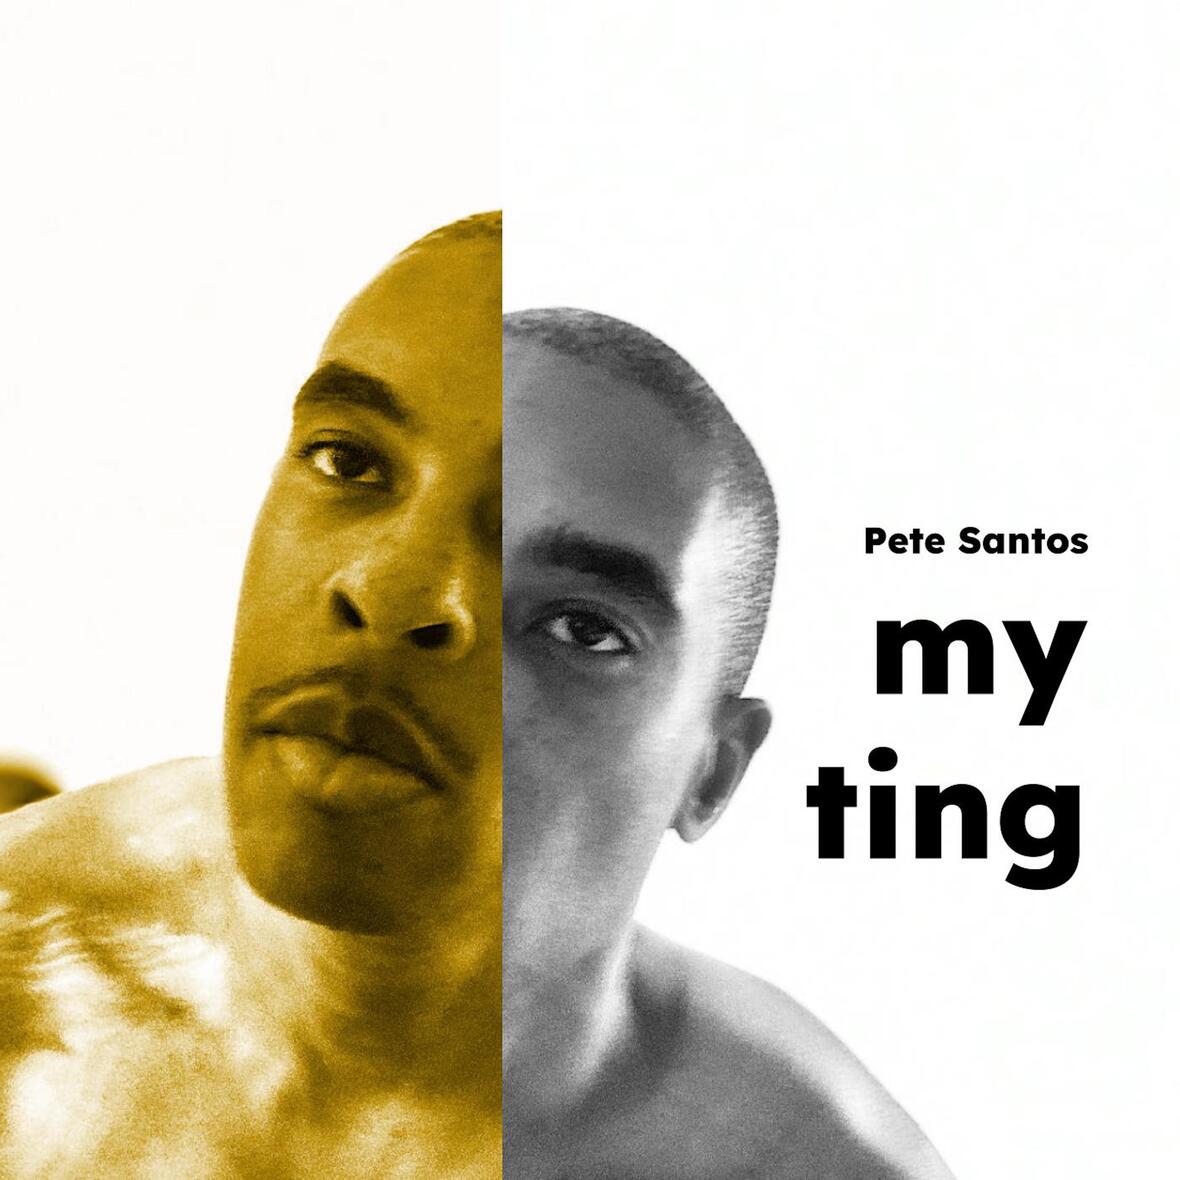 PETE SANTOS – “MY TING”